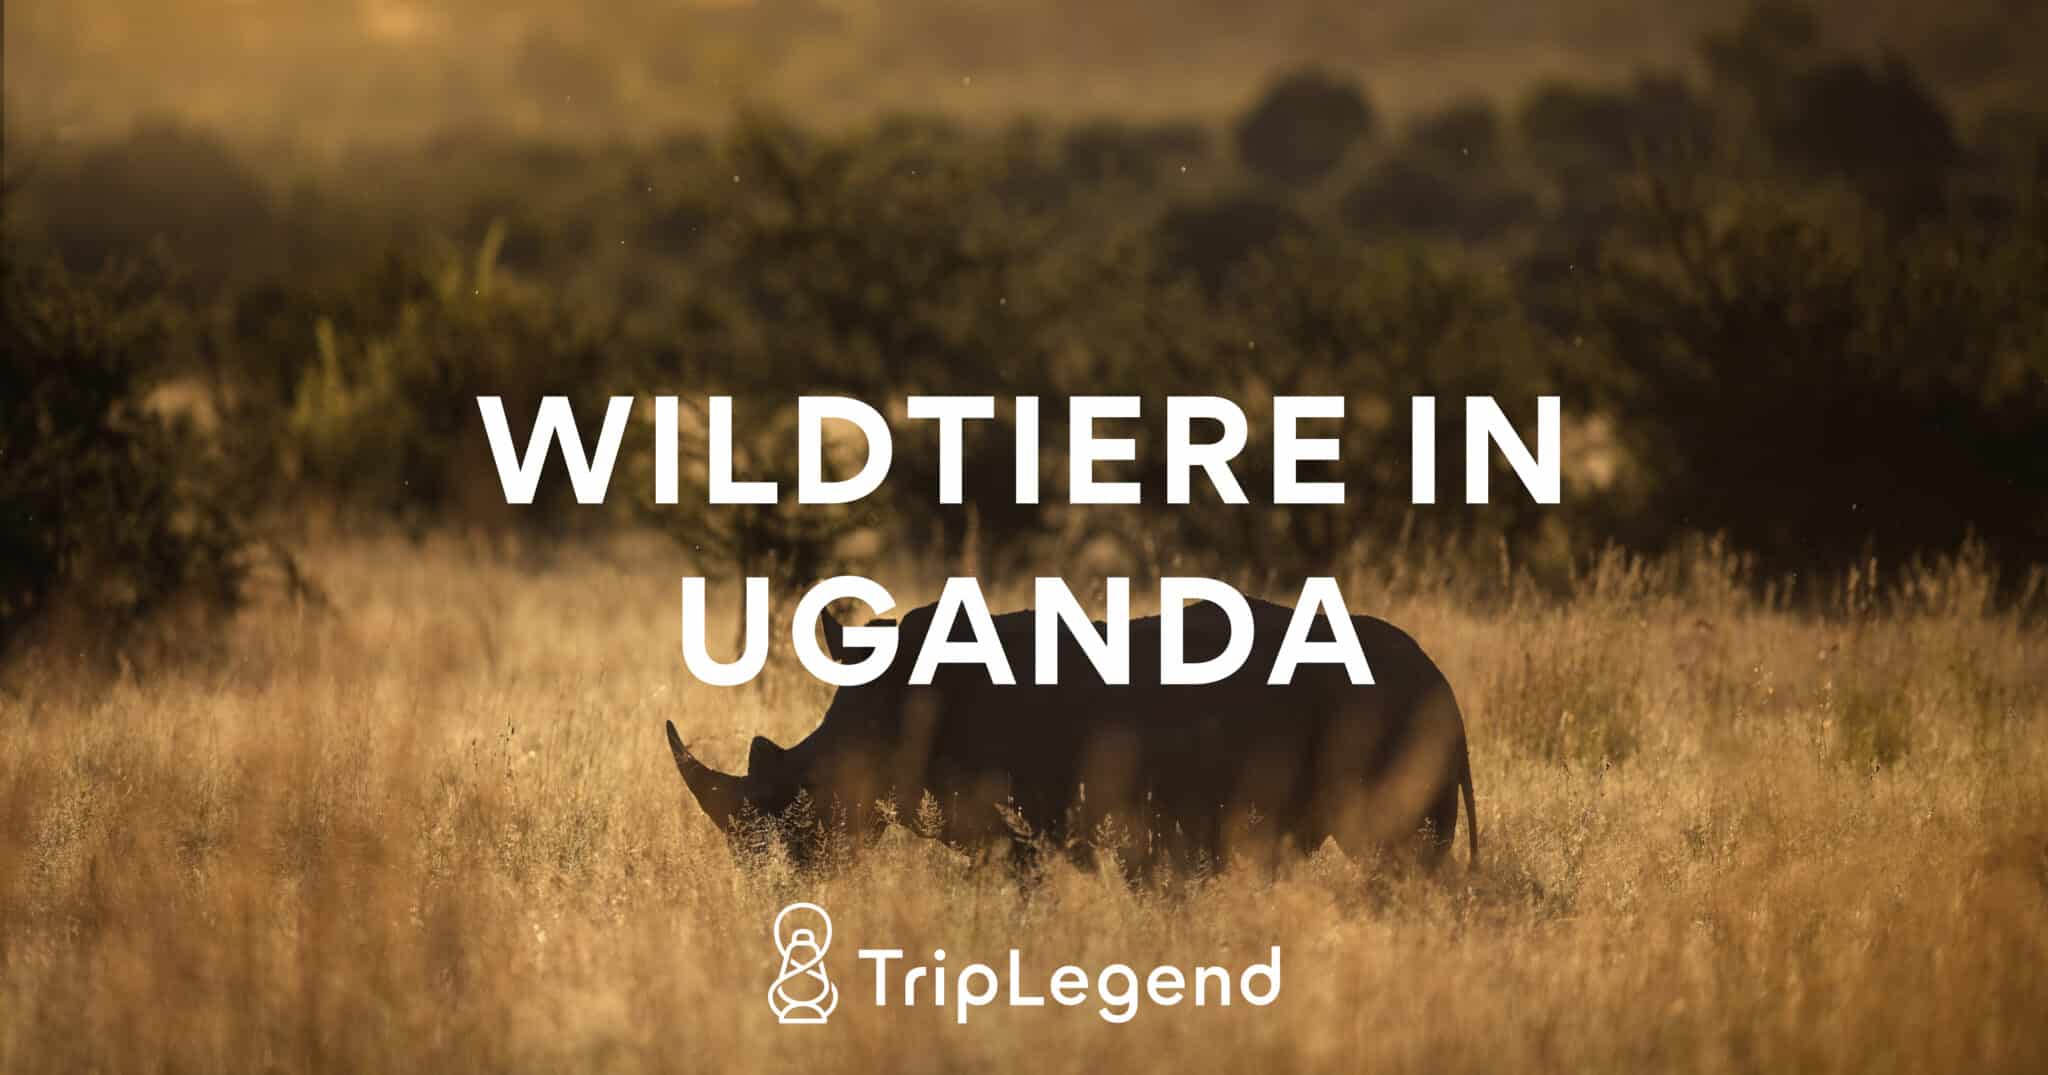 Imagen colaboradora del artículo sobre la fauna salvaje en Uganda